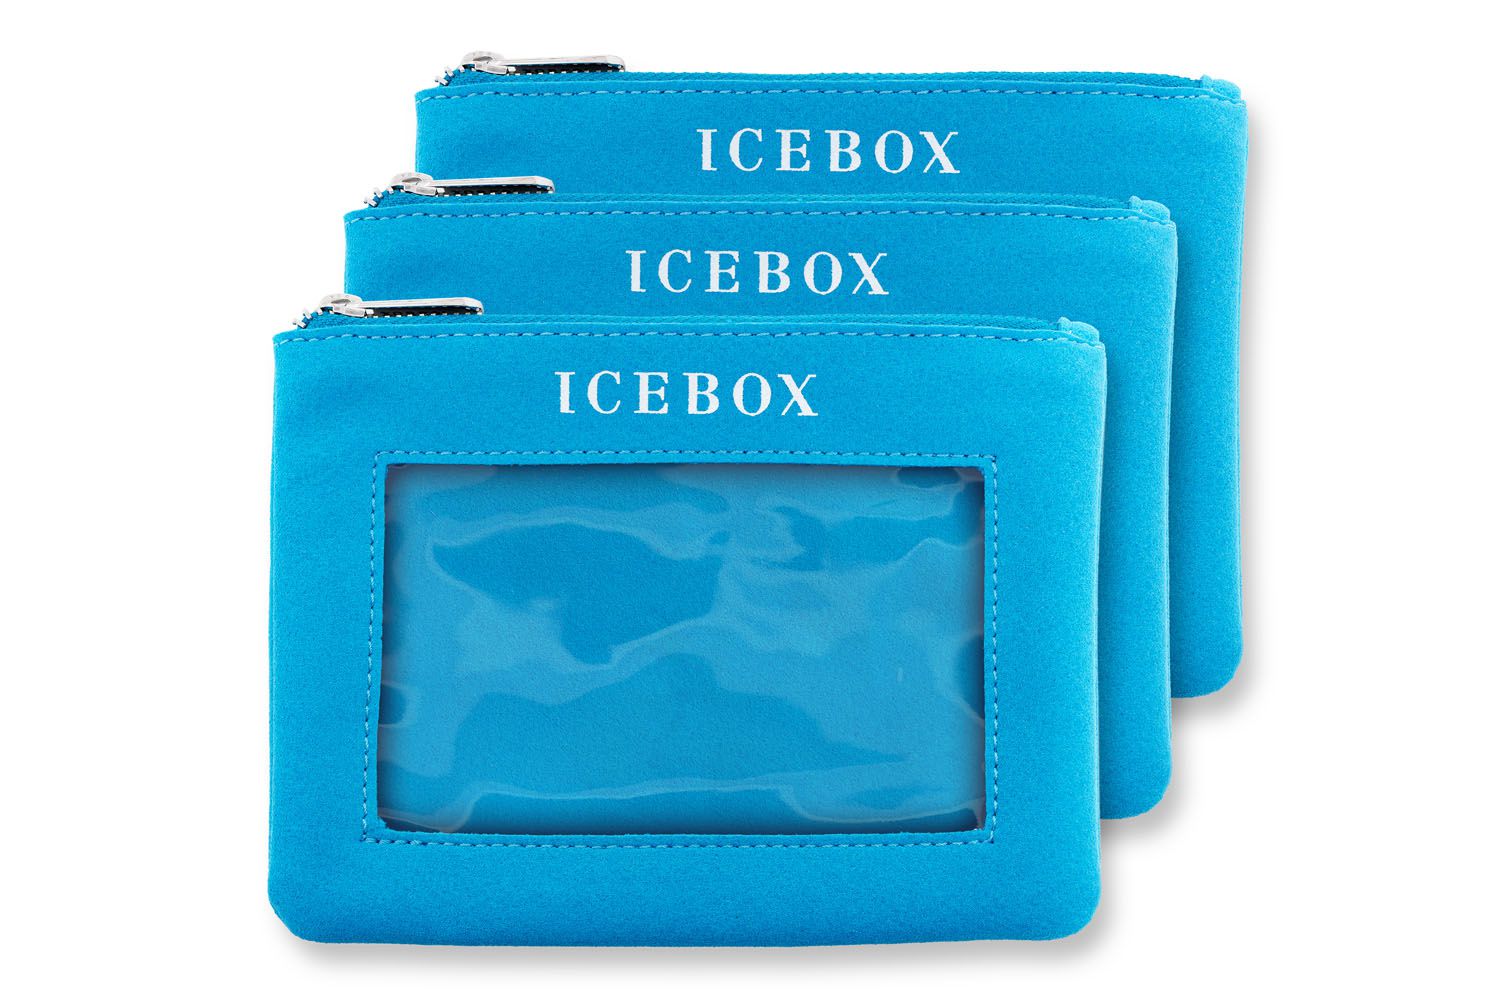 Ice Box Purse